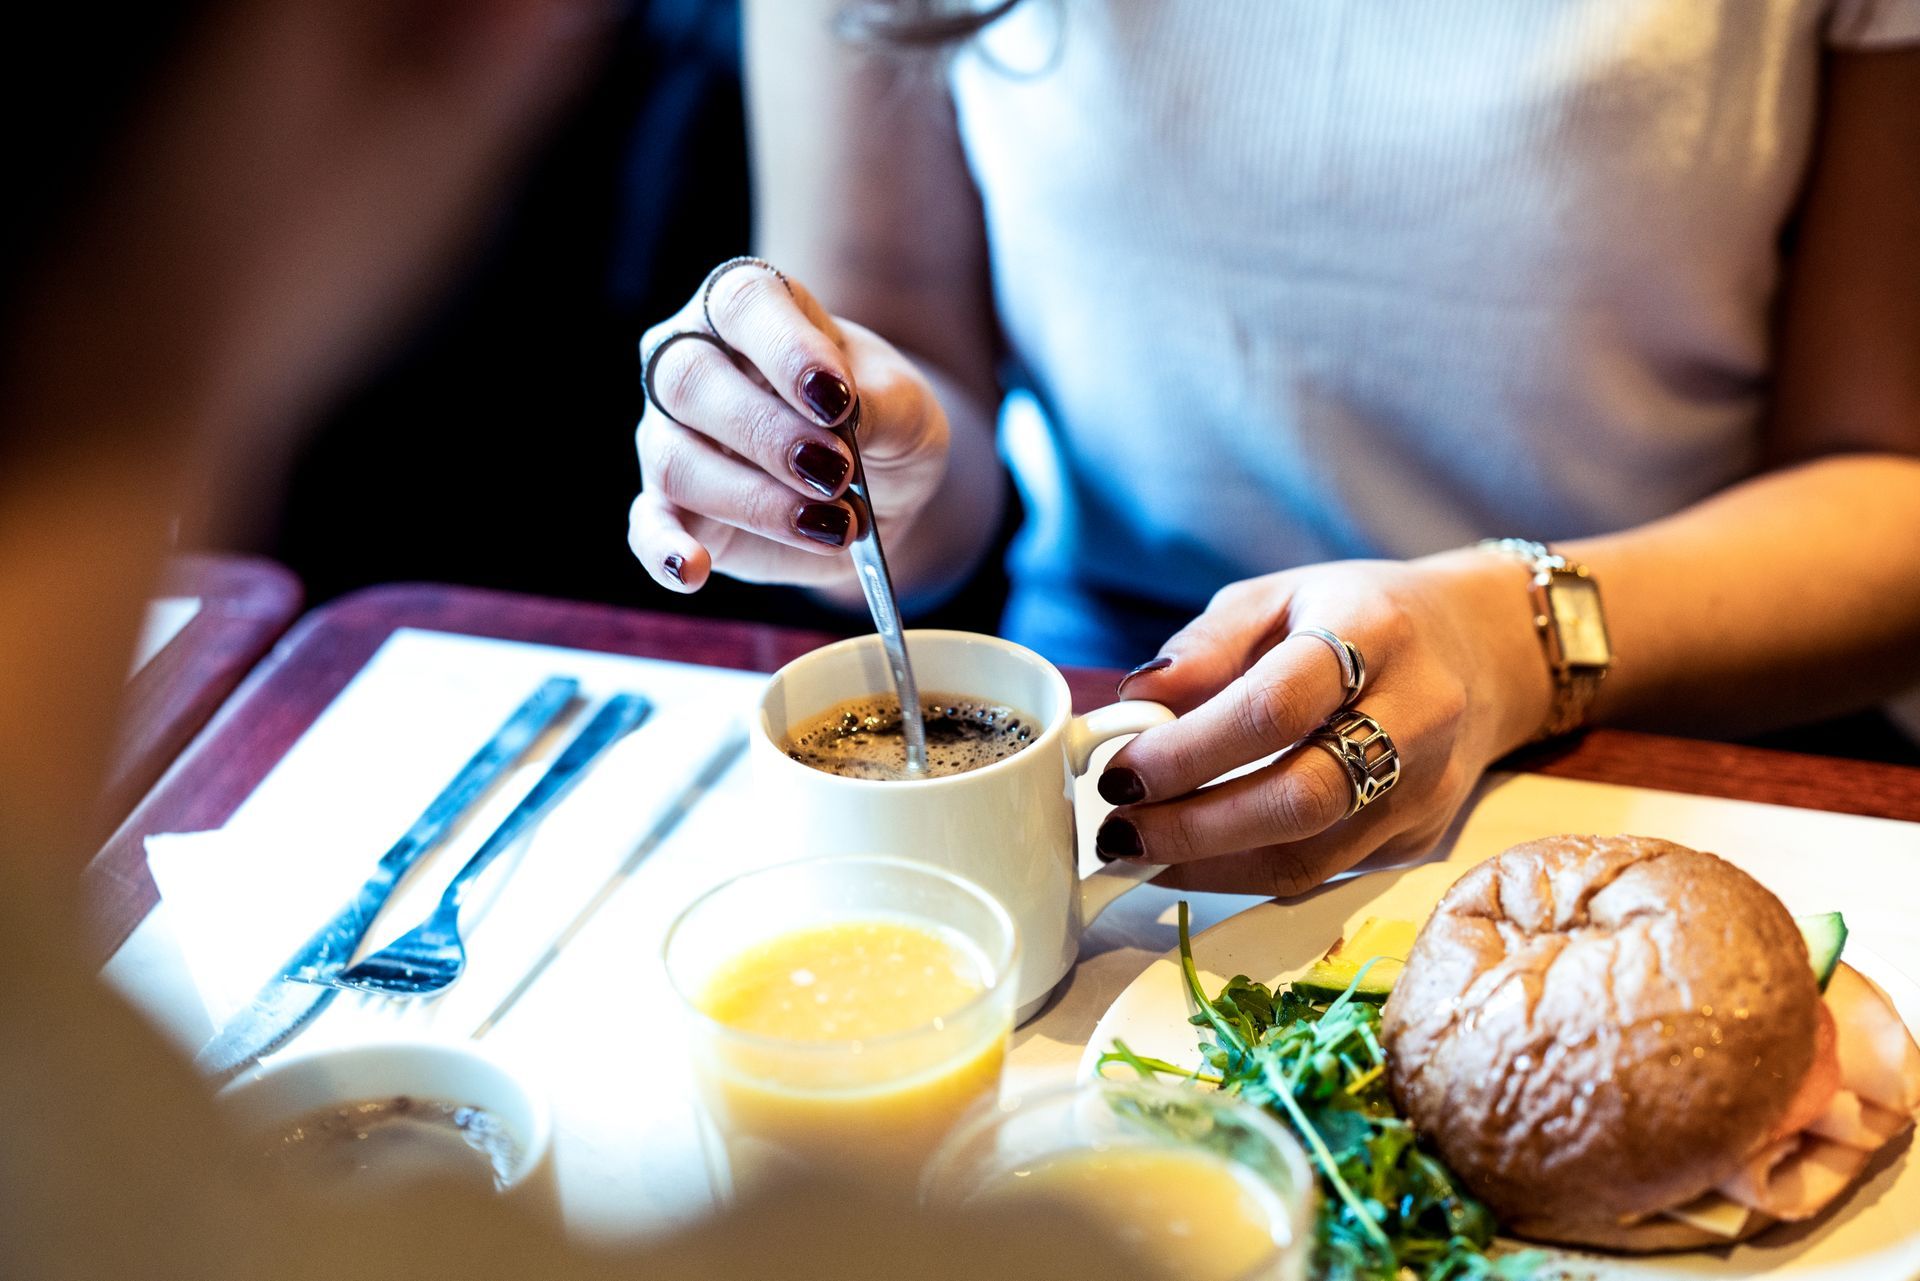 une femme est assise à une table en train de manger un sandwich et de boire du café.